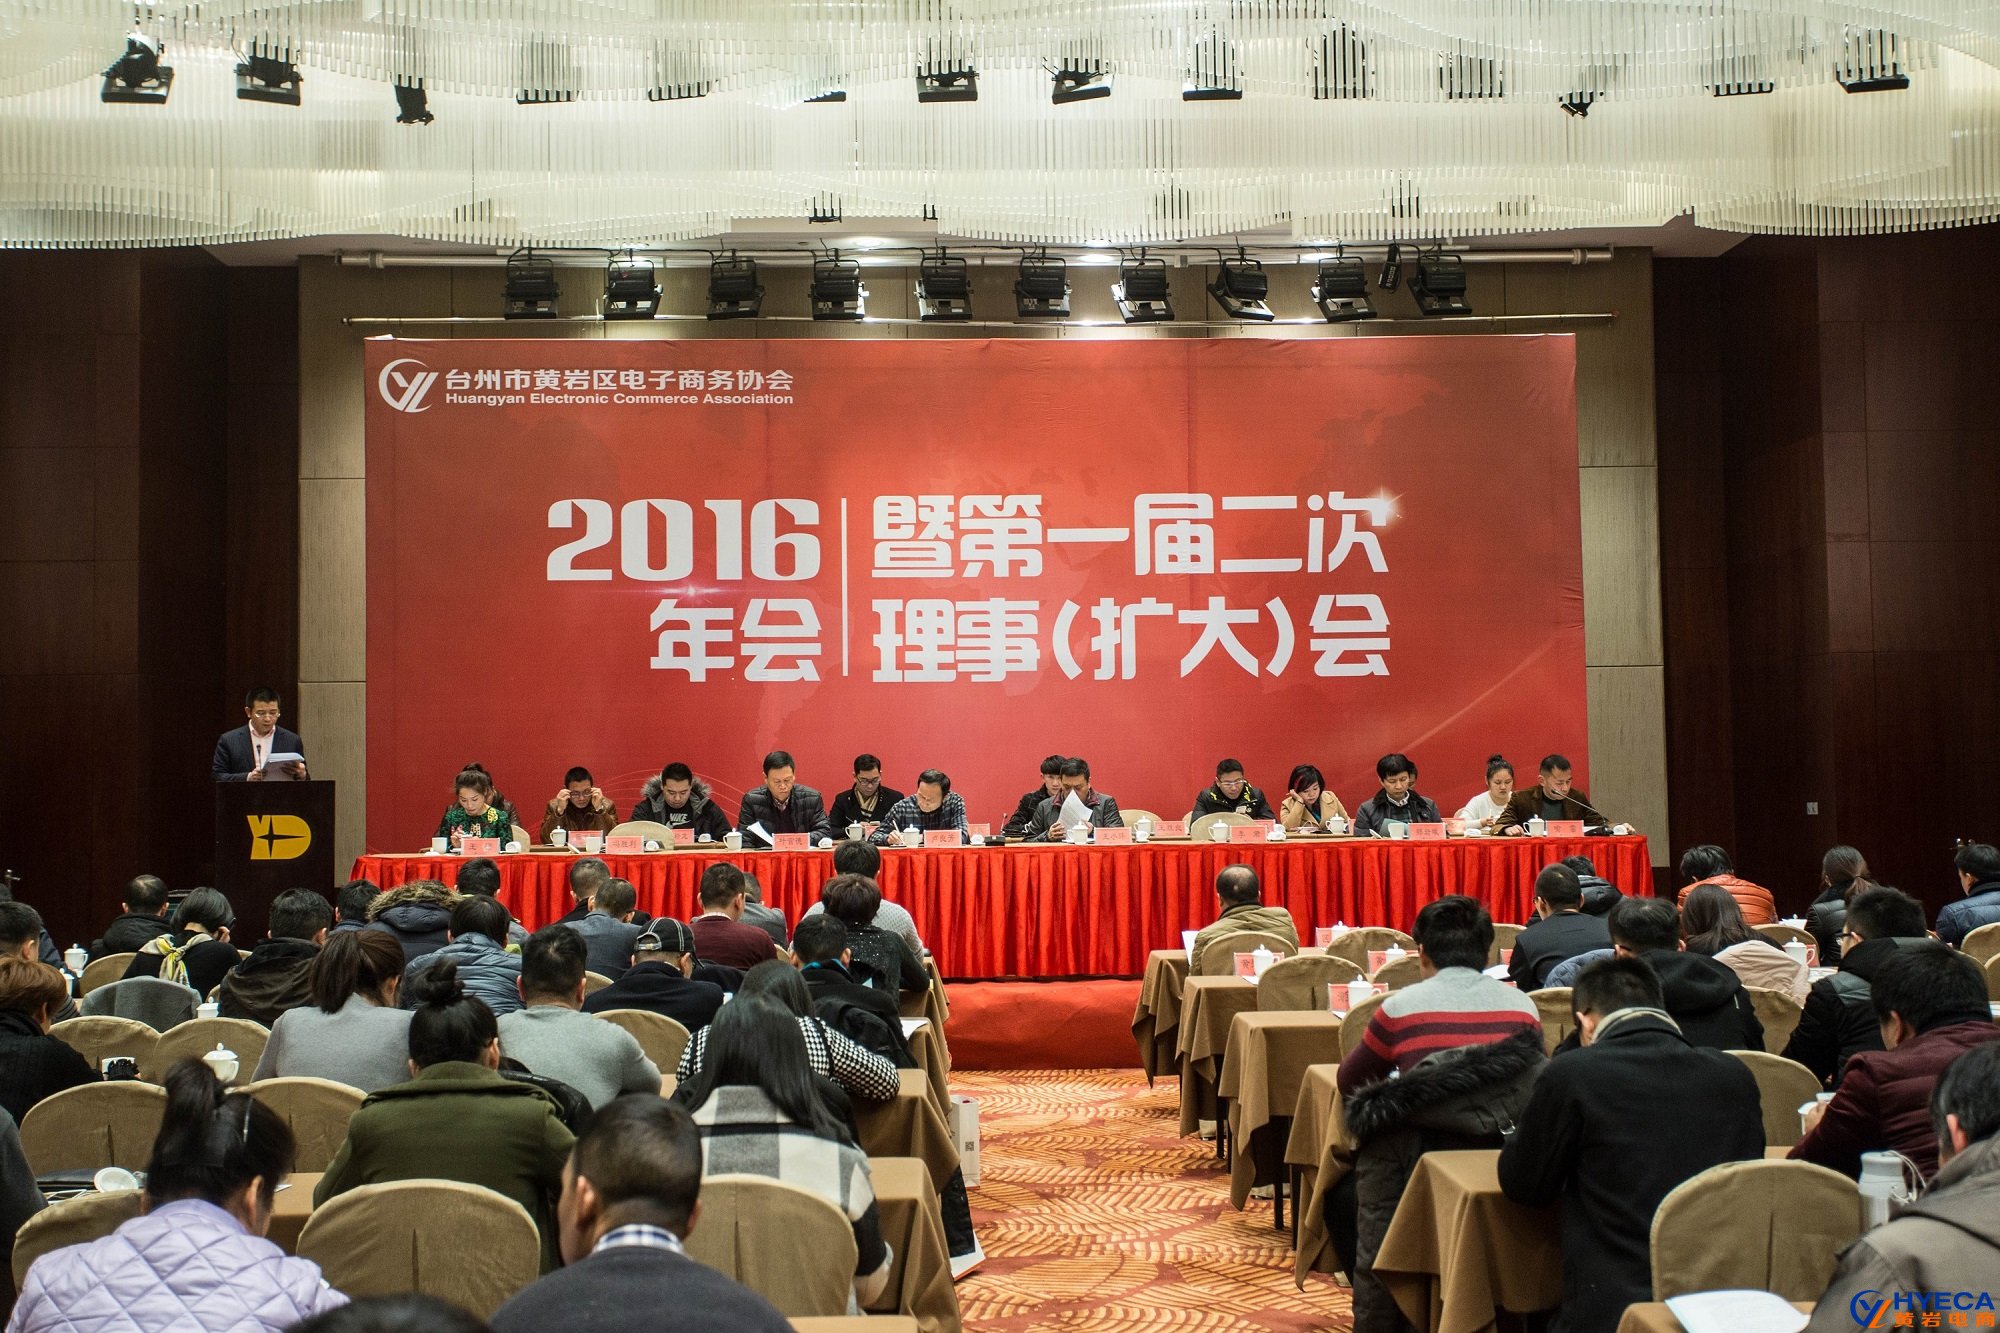 祝賀黃巖電子商務協會2016年會圓滿舉行